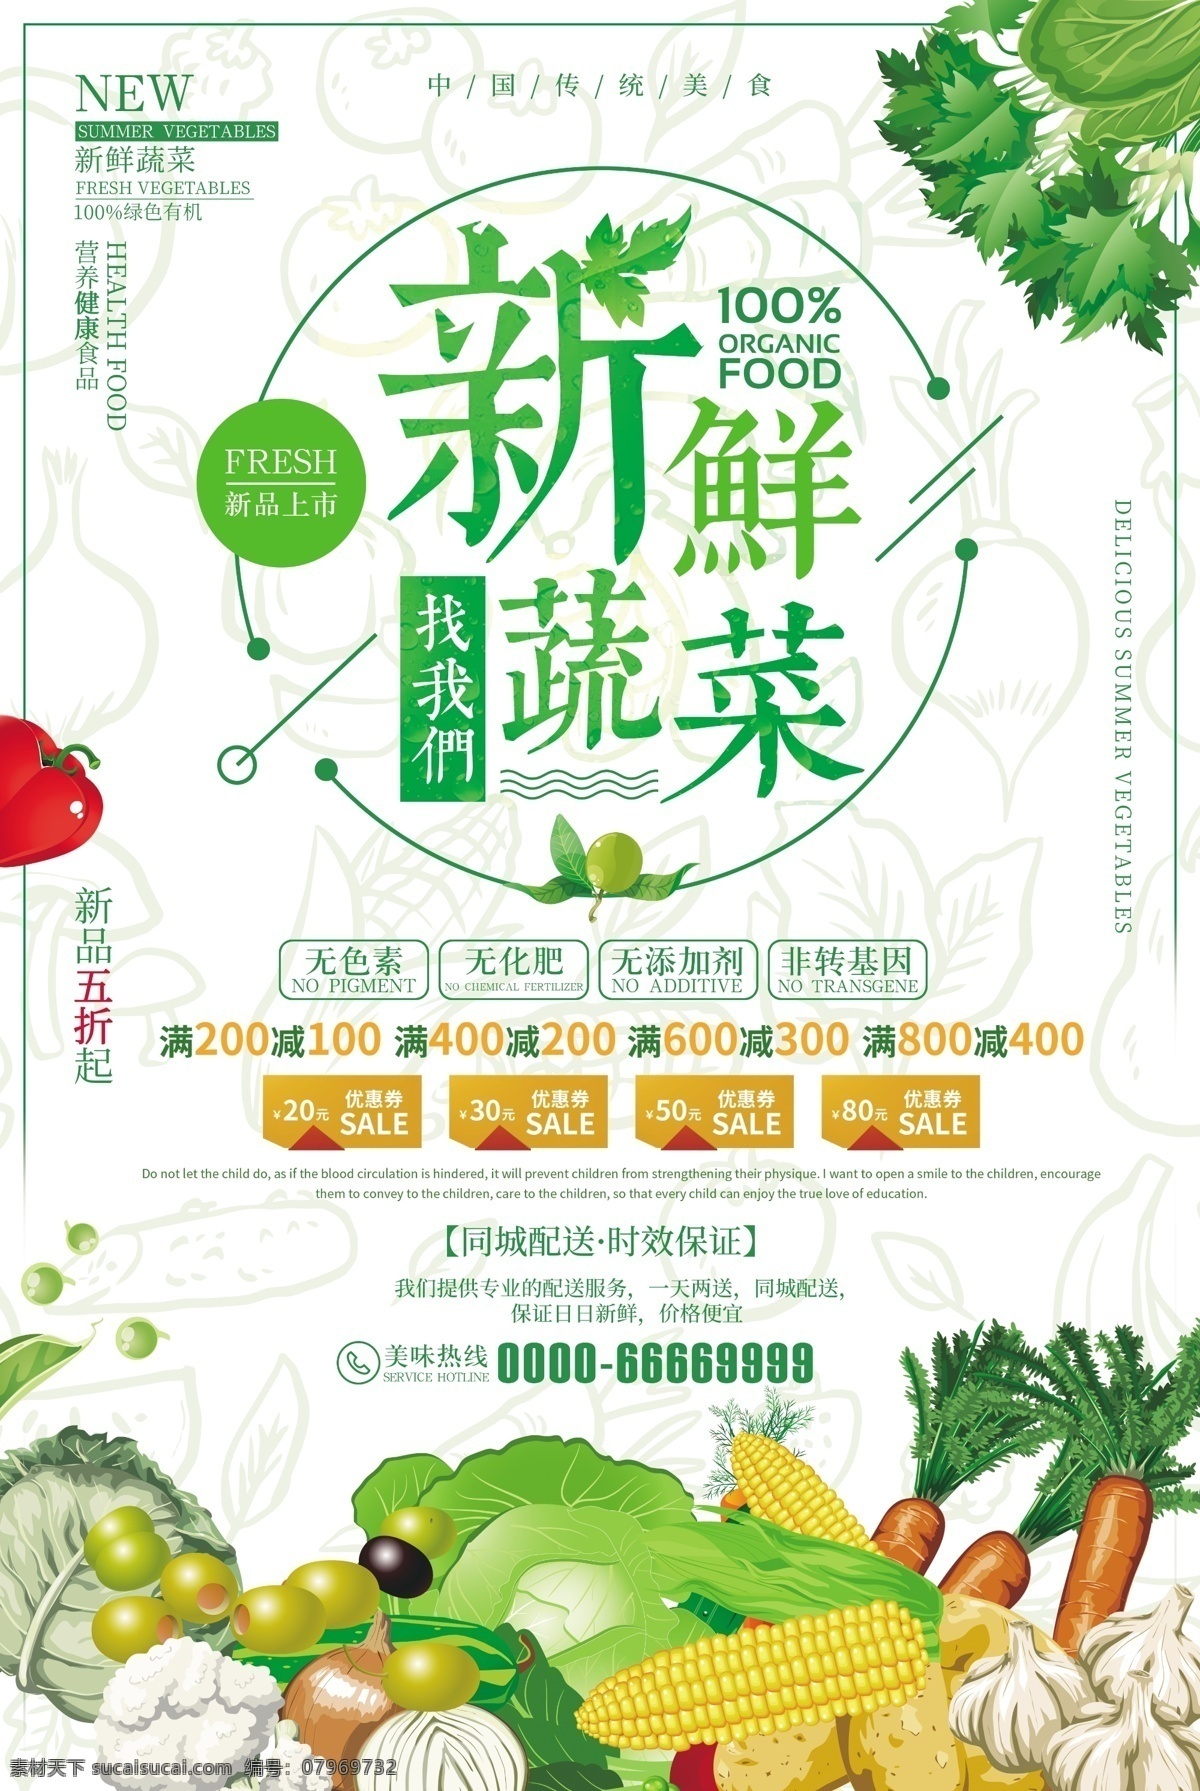 新鲜蔬菜 创意 特色蔬菜 宣传海报 手绘蔬菜 卡通蔬菜 宣传 蔬菜 特色新鲜